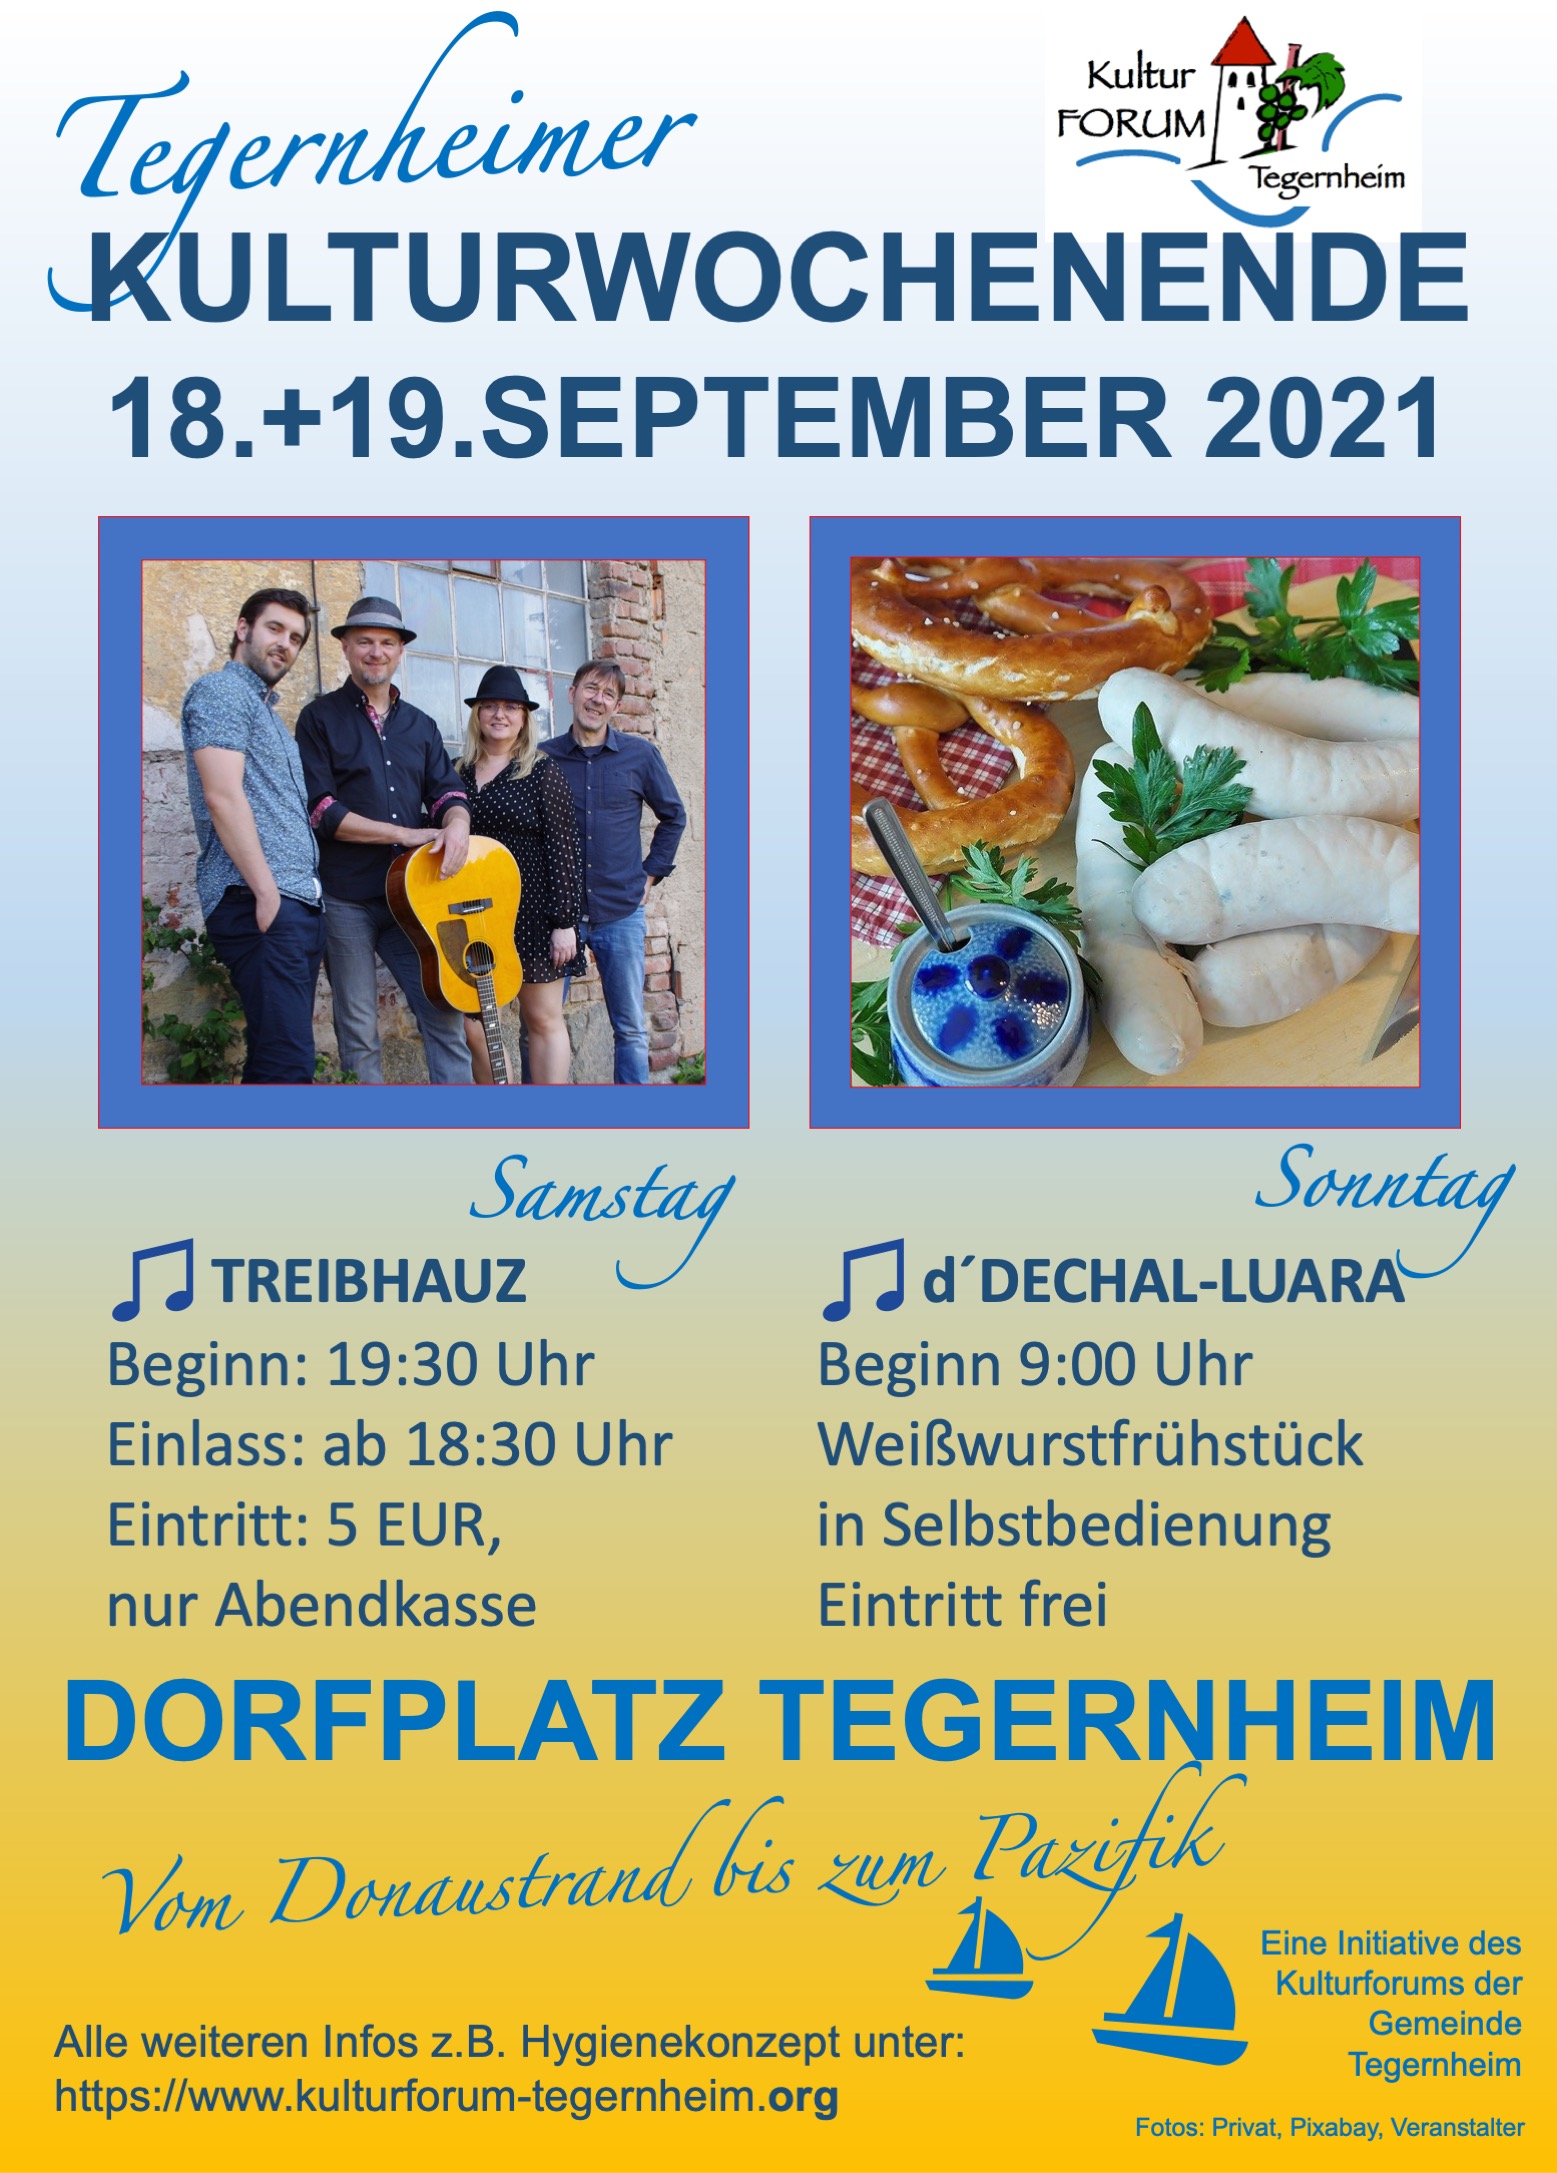 Kulturforum Tegernheim bietet musikalische Weltreise